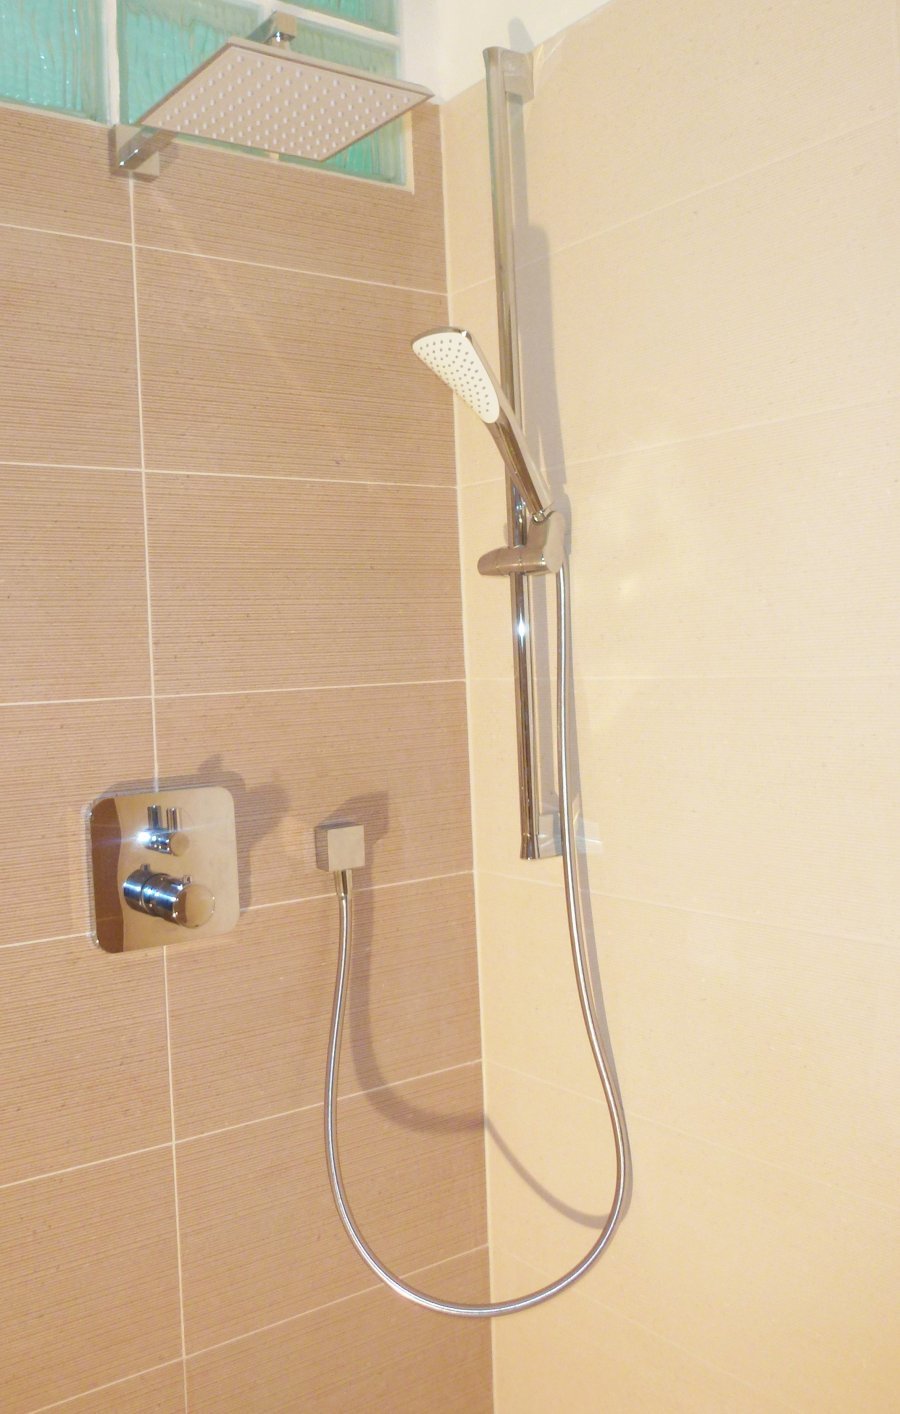 Série Kludi Fizz jsou symbolem výjimečného designu a vysoké funkčnosti v segmentu ručních sprch | Koupelny-svitavy.cz